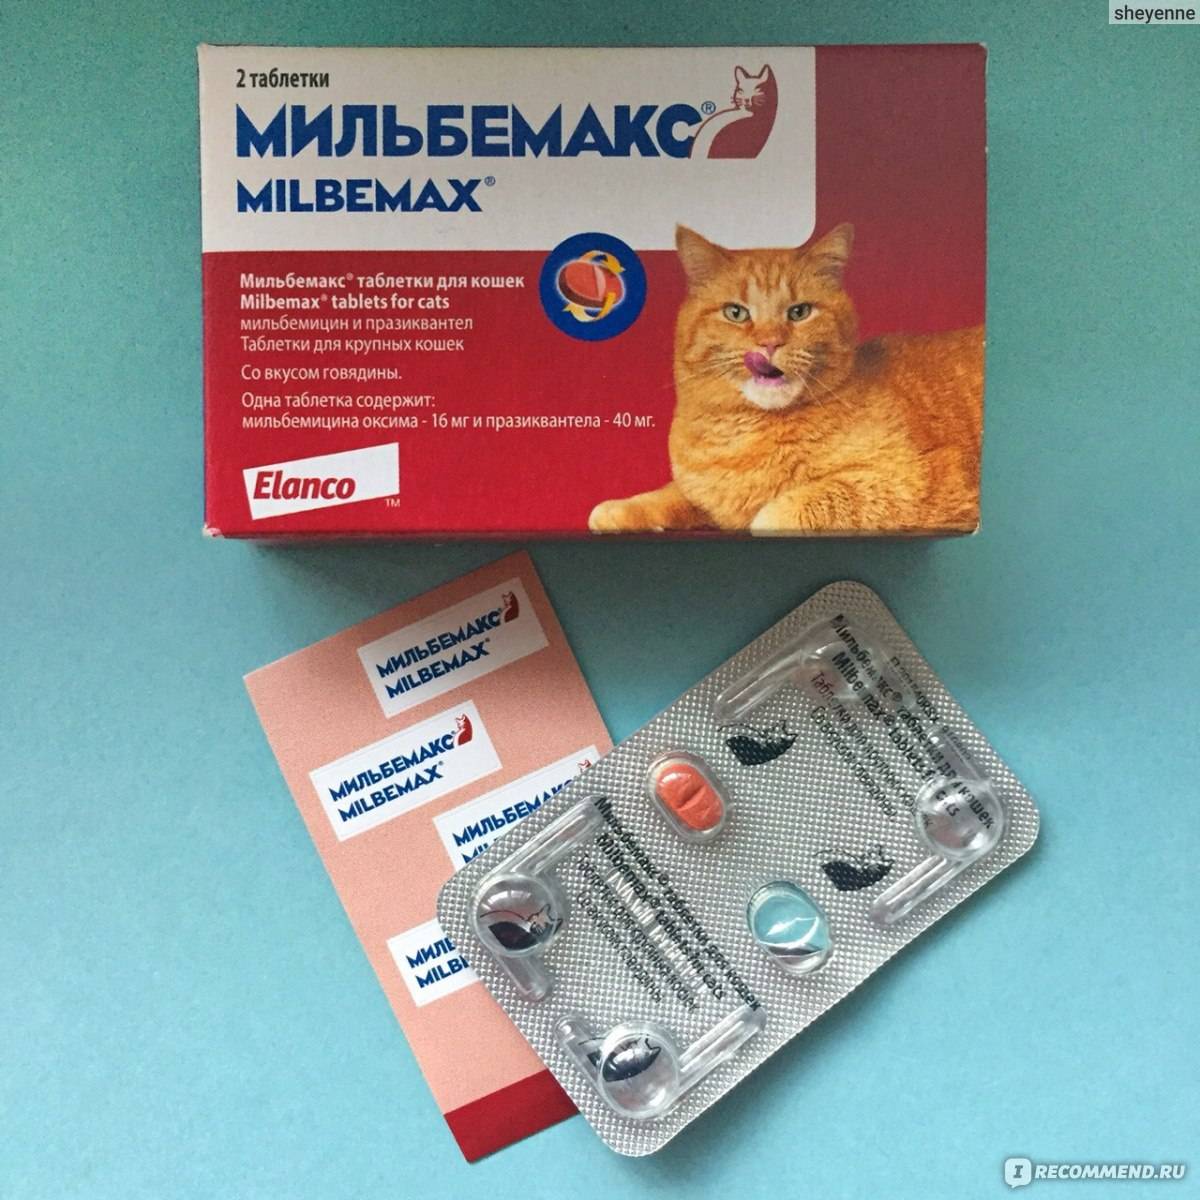 Как выбрать препарат от глистов для кошки